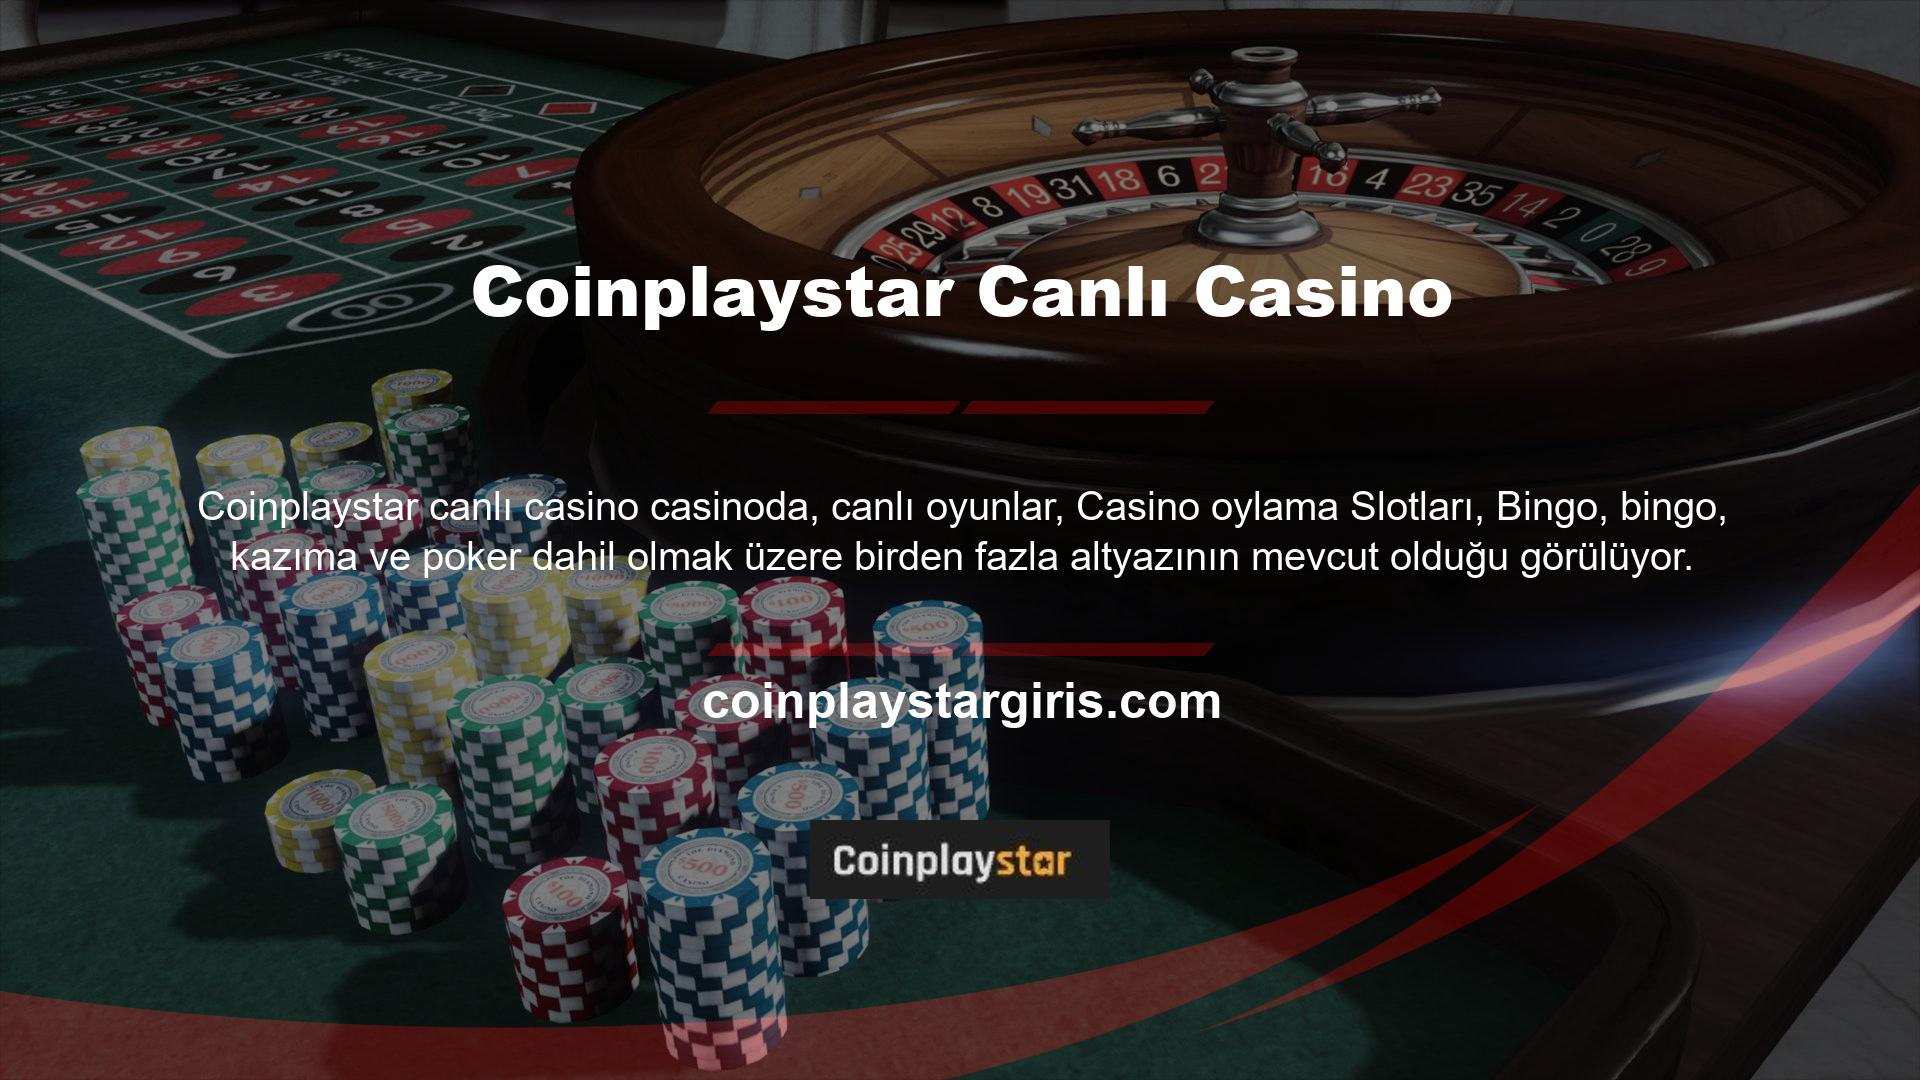 Hepsinin casino adını taşıdığını ve online kullanıma açık olduğunu belirtelim